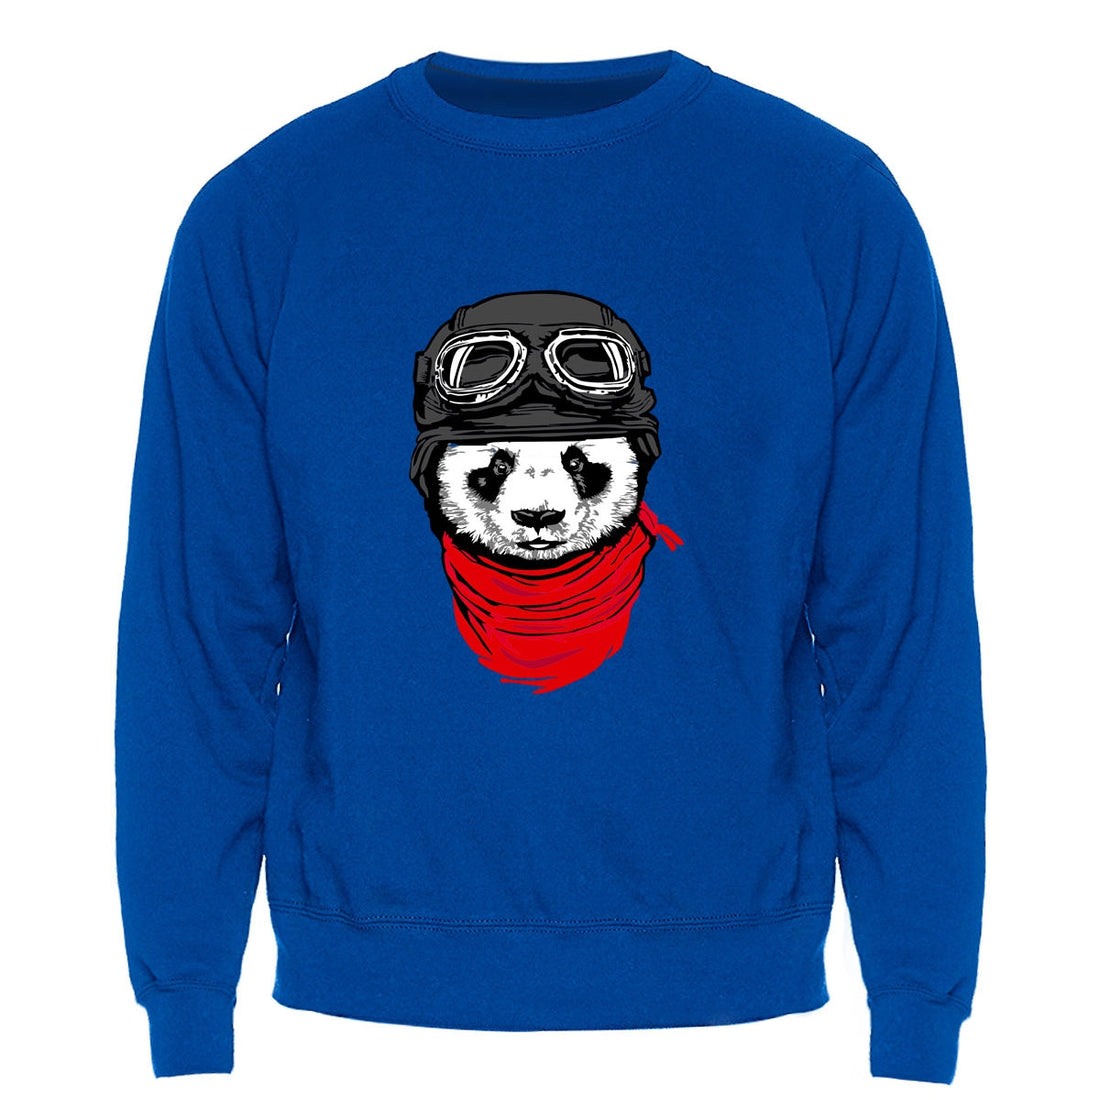 Men's Winter/Autumn Fleece Warm Sweatshirt With Print